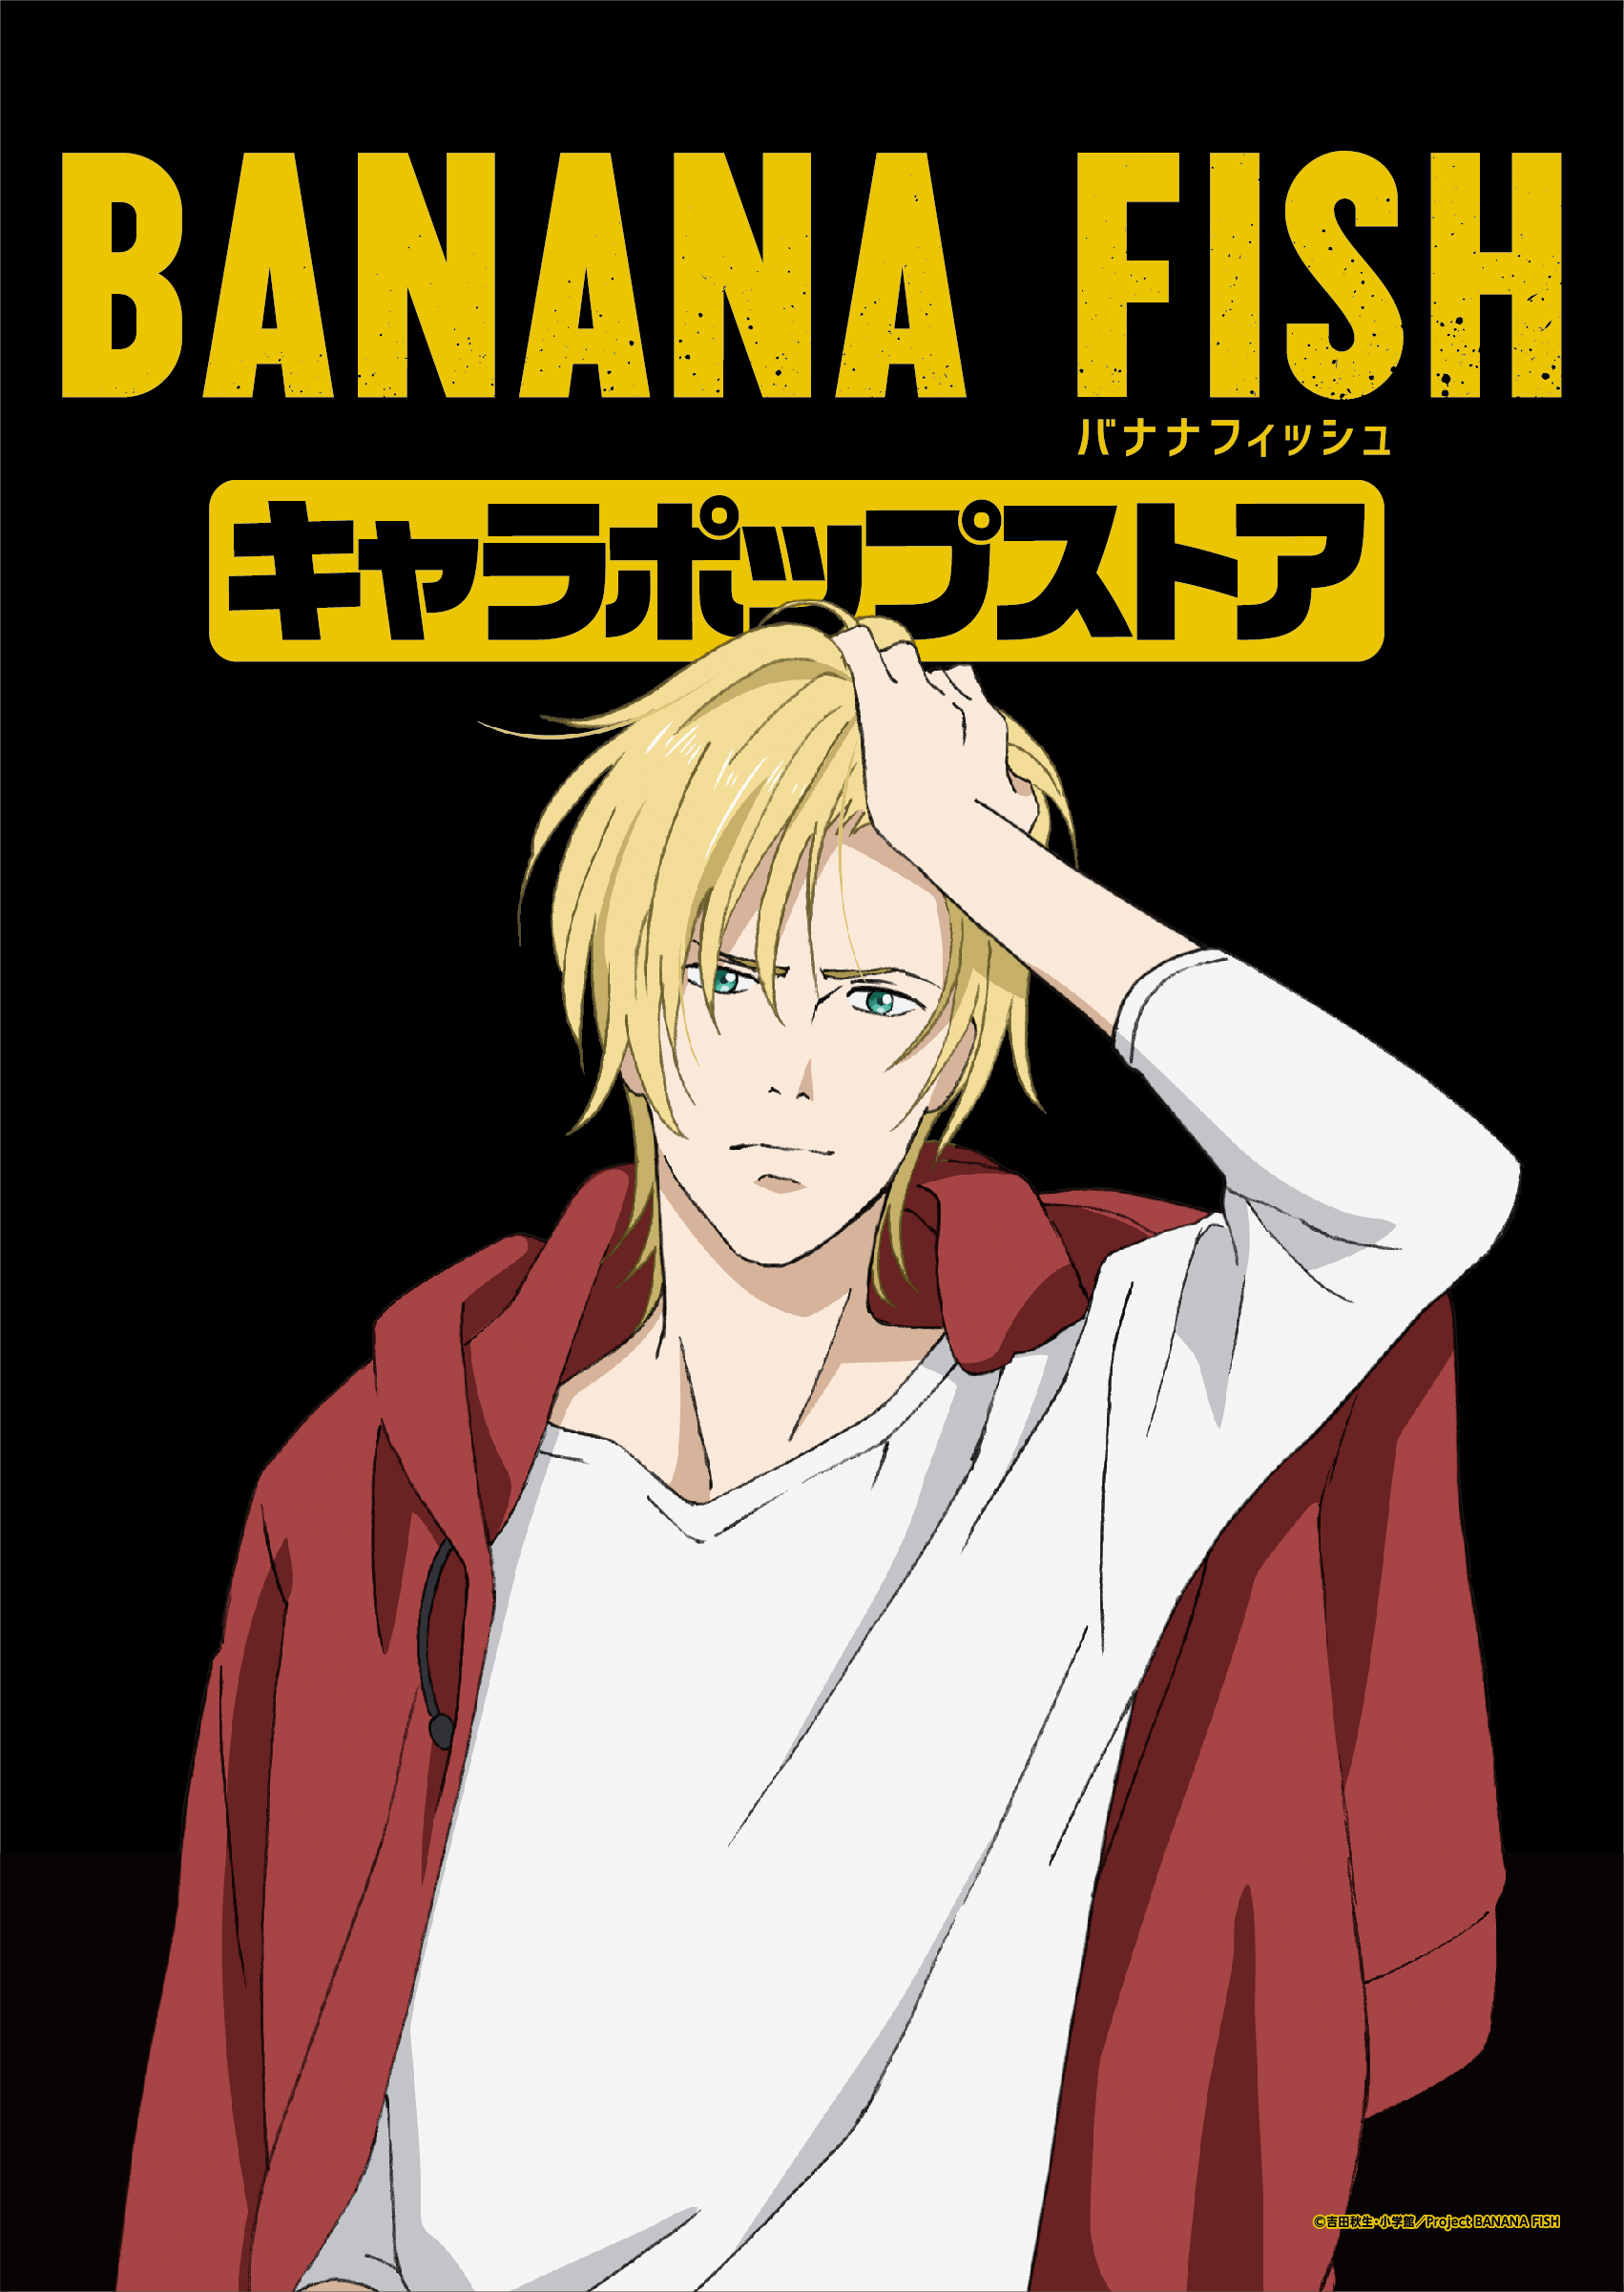 テレビアニメ Banana Fish 初のオンリーショップが登場 限定描き